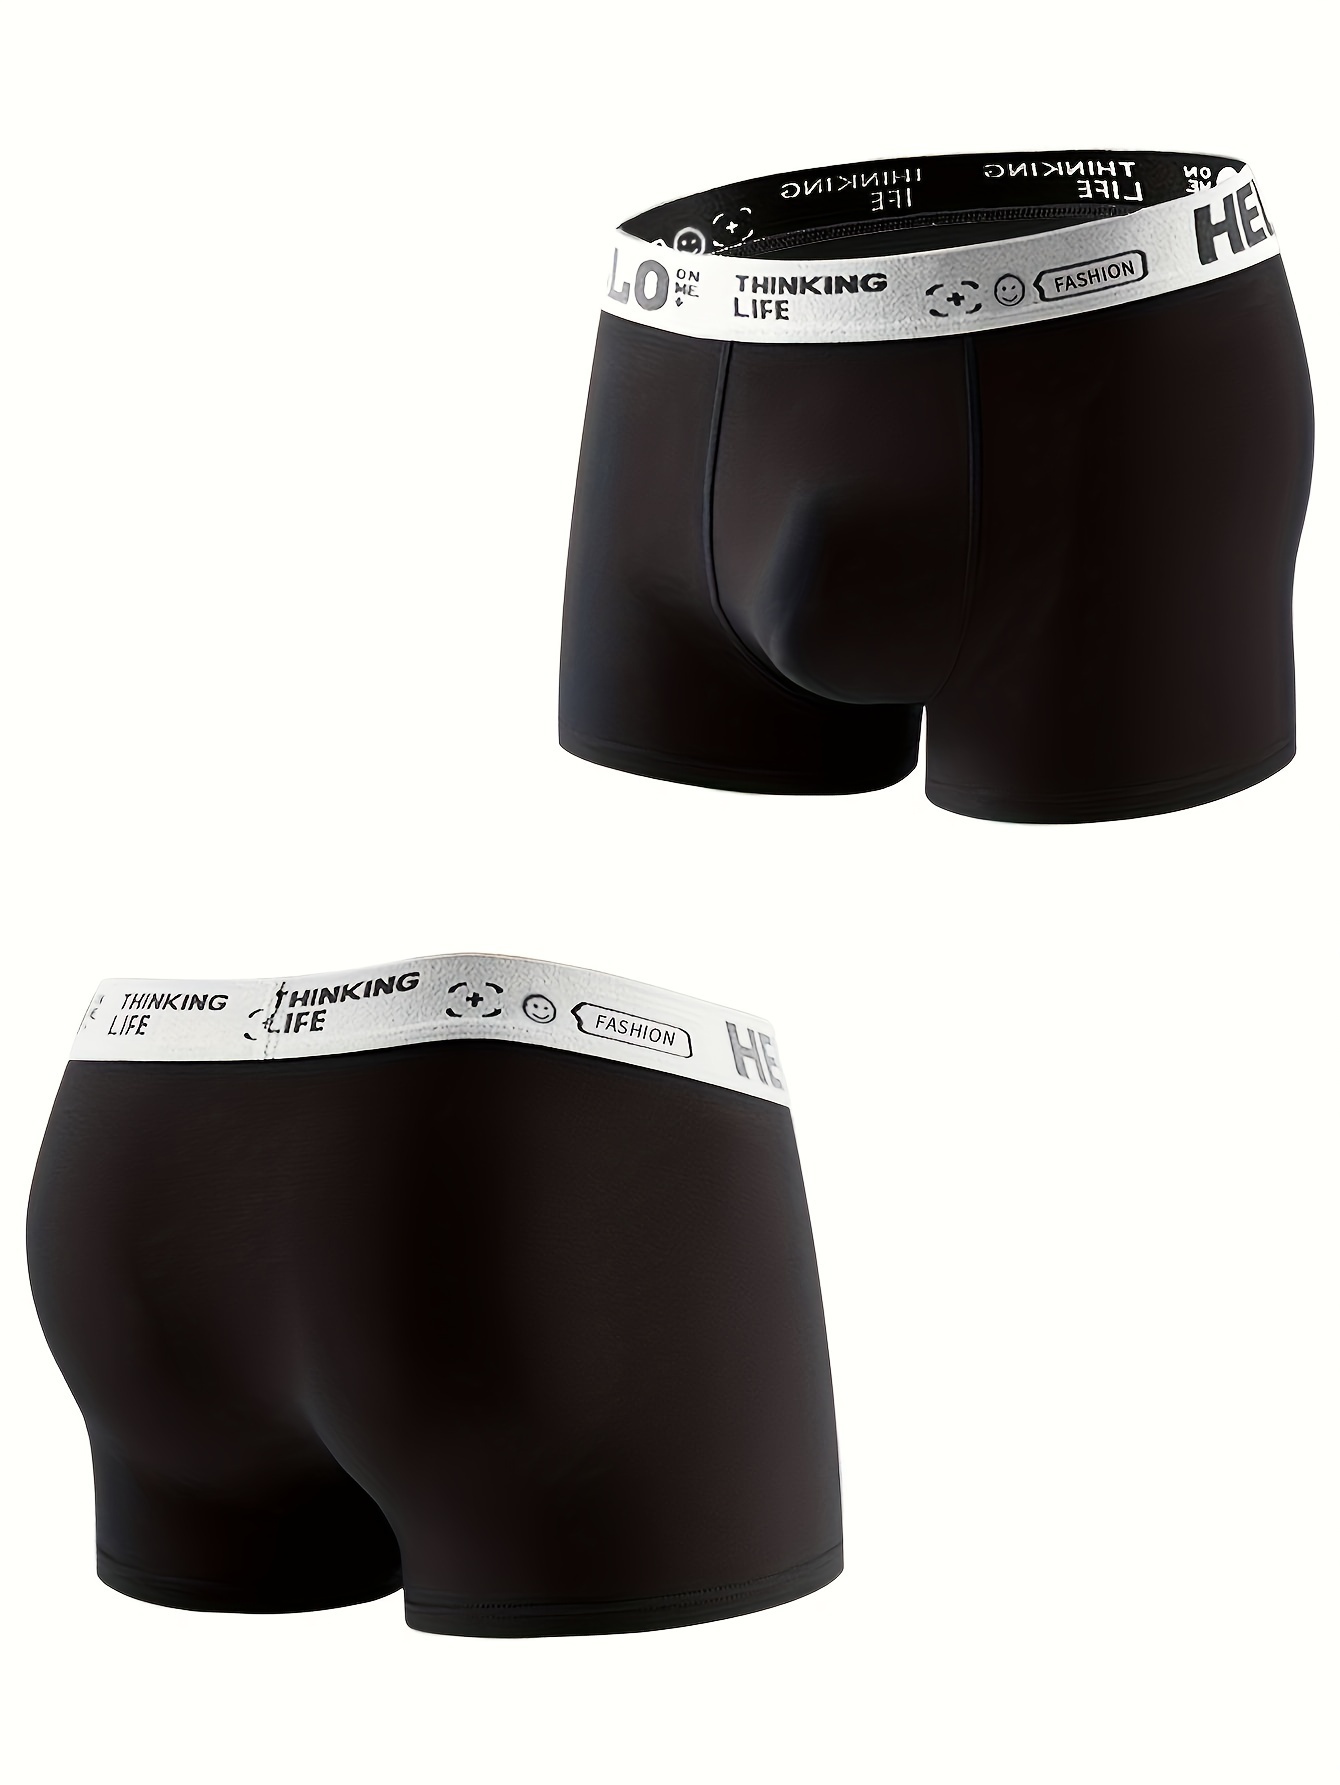 MEN'S Calvin Klein CK Underwear Boxer Briefs Super Sexy & HOT FAST  SHIPPINGN!